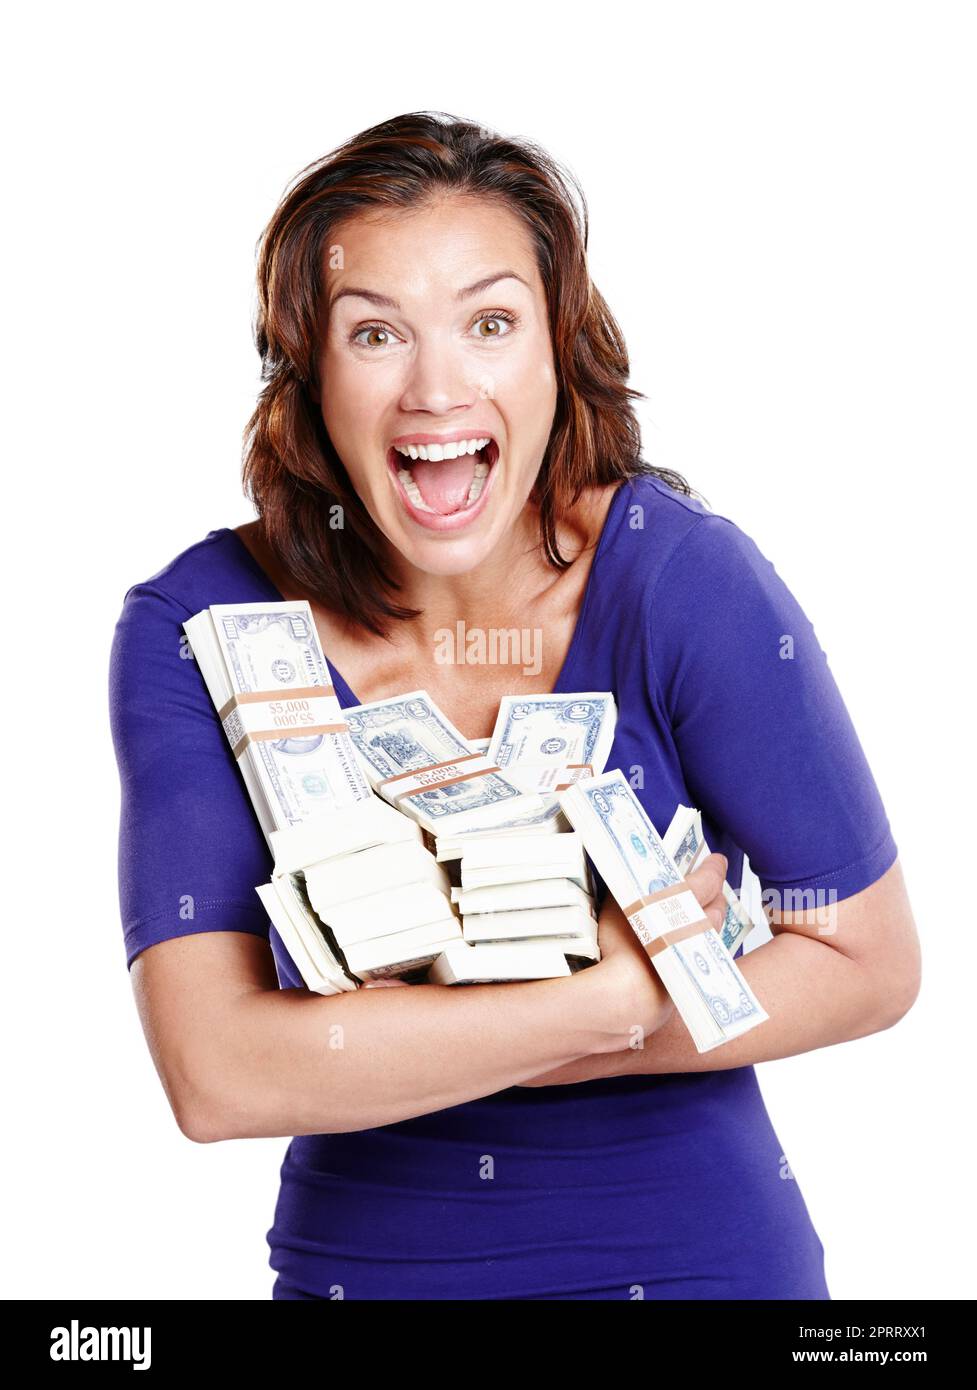 Ich kann nicht glauben, dass ich gewonnen habe. Studioporträt einer Frau Mitte 30s, die aufgeregt aussieht und Stapel von Papiergeld hält. Stockfoto